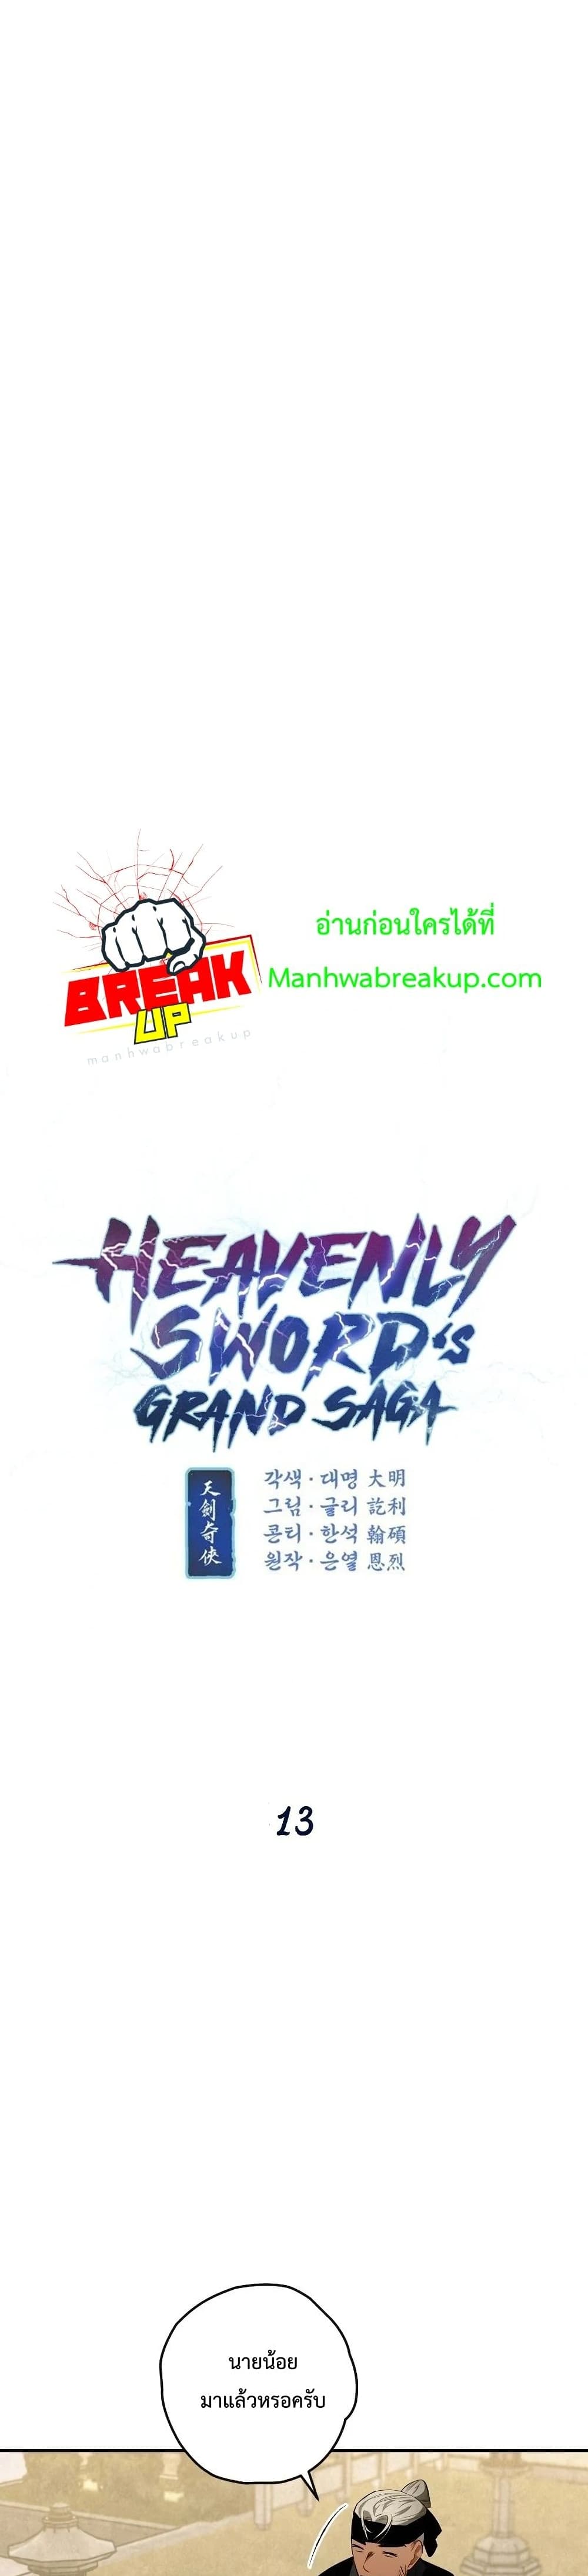 Heavenly Swordâ€™s Grand Saga à¸•à¸­à¸™à¸—à¸µà¹ˆ 13 (3)